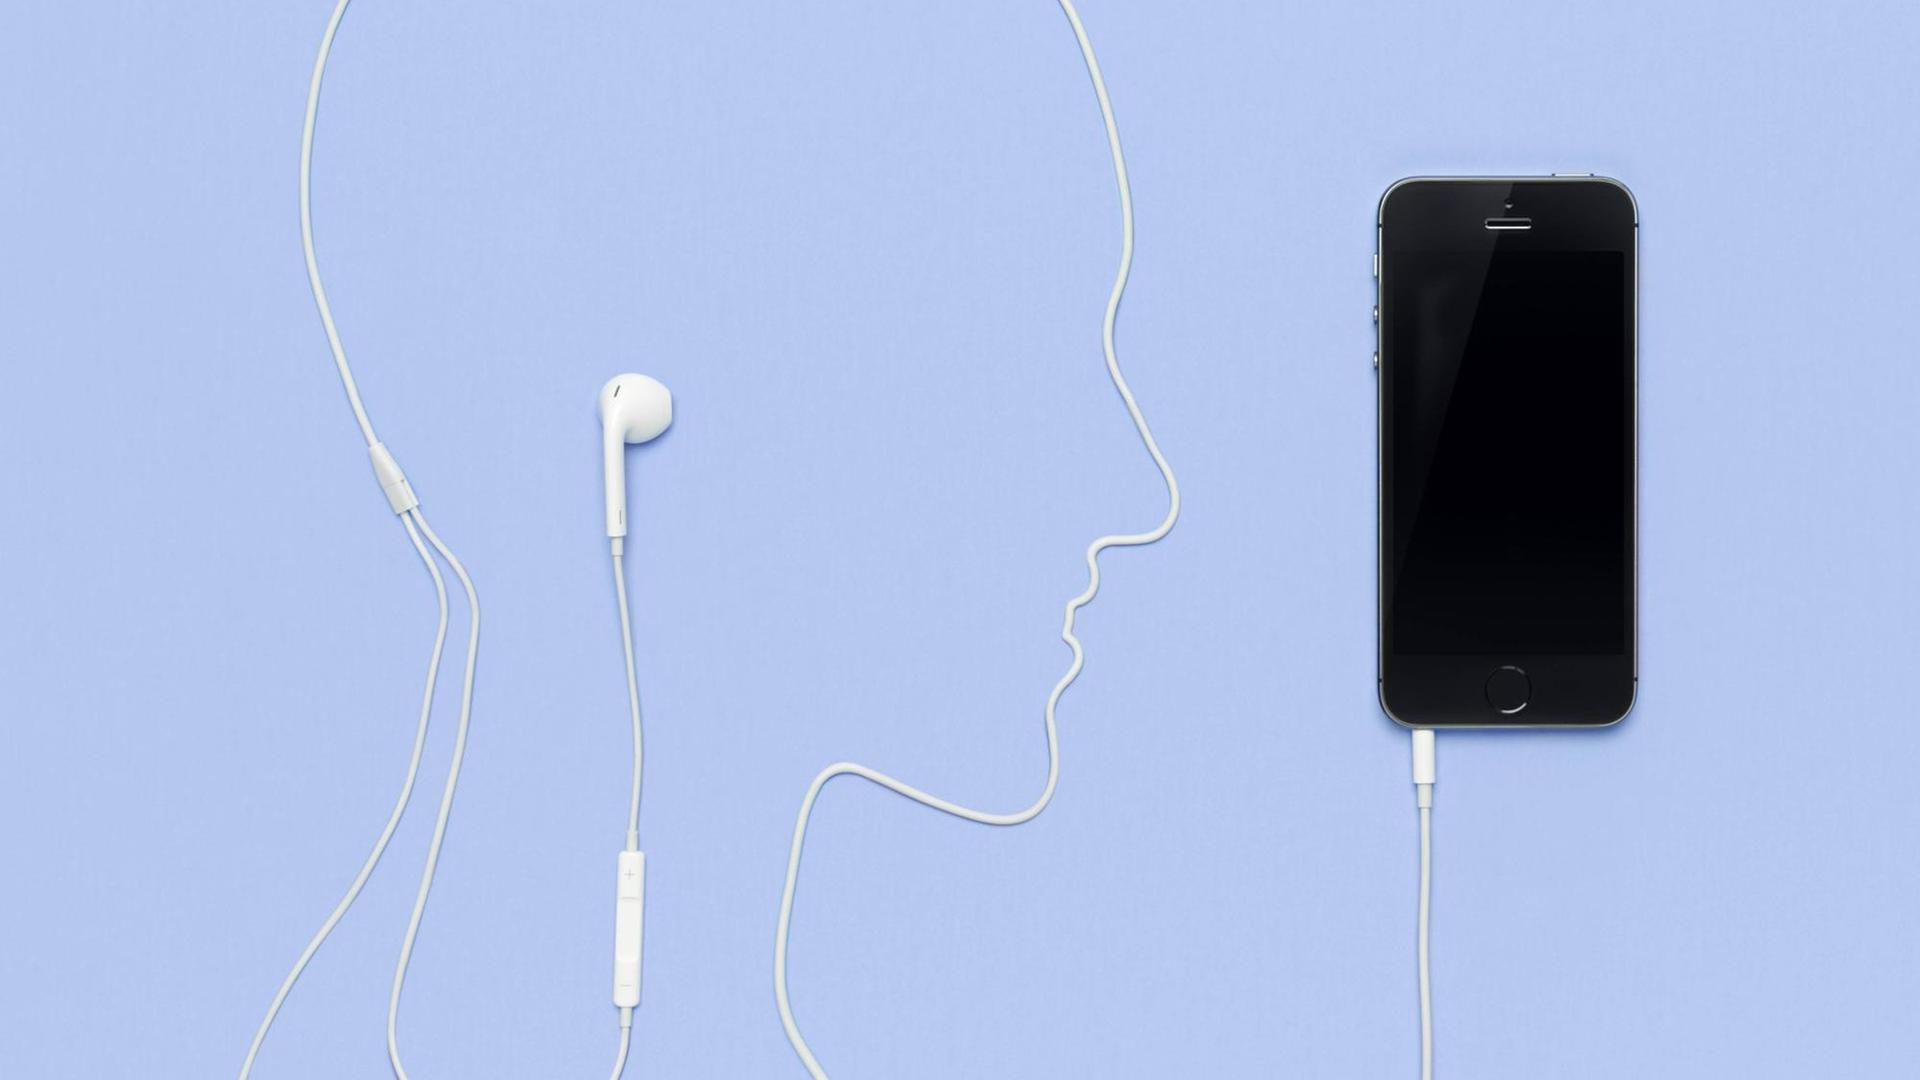 Kopfhörerkabel liegt in der Form eines Männerkopfes und ist in einem iPhone 5s eingestöpselt